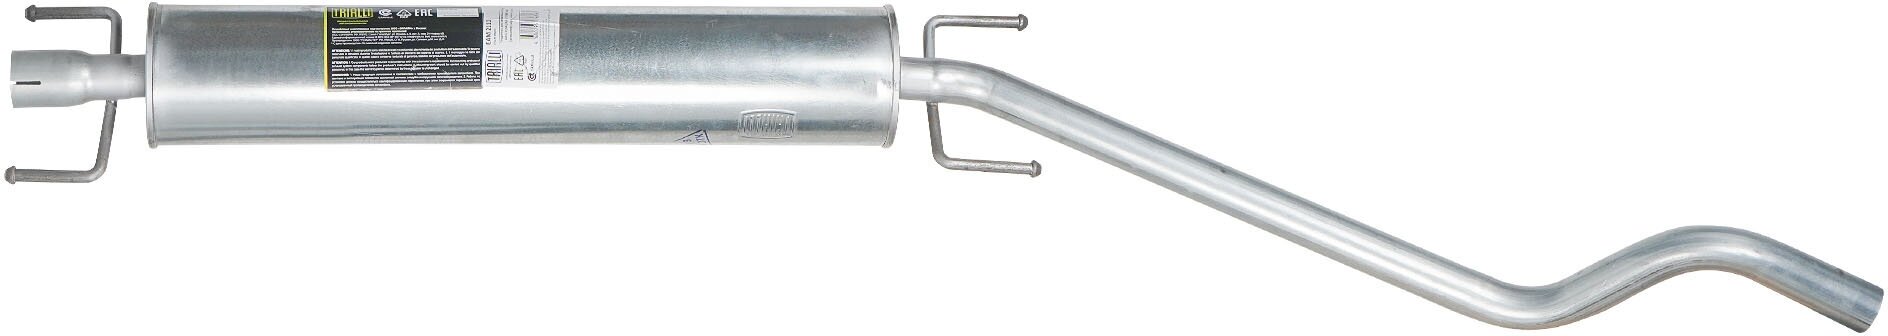 Глушитель для автомобилей Opel Astra H (04-)/Astra G (98-) дополнительный (резонатор) (алюминизированная сталь) EAM 2110 TRIALLI